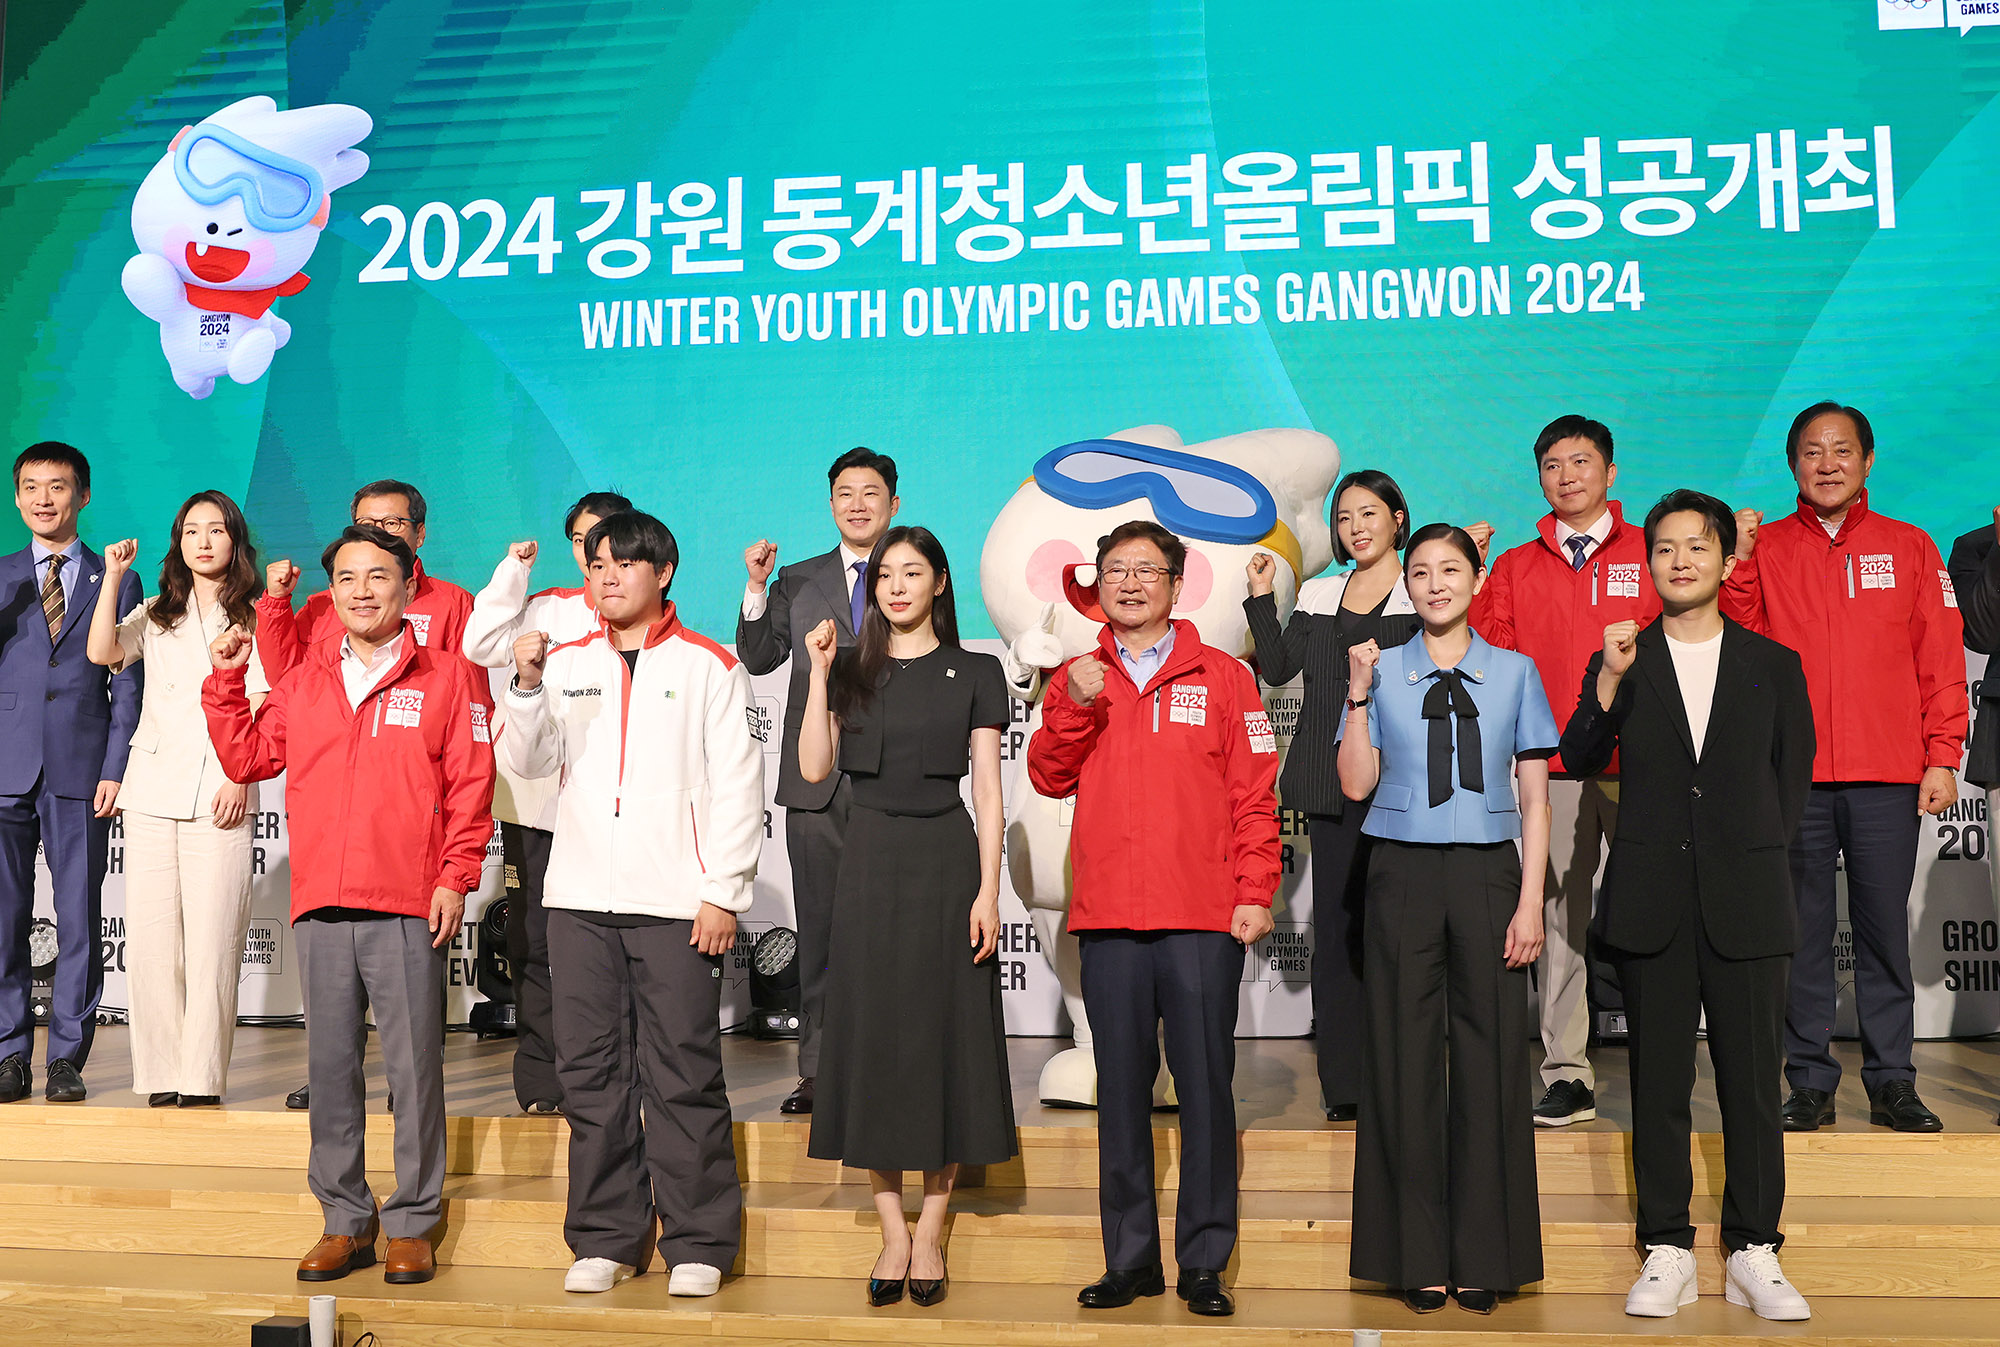 ‘2024 강원 동계청소년올림픽’, G200일 계기 성공개최 다짐(2023.07.06.)